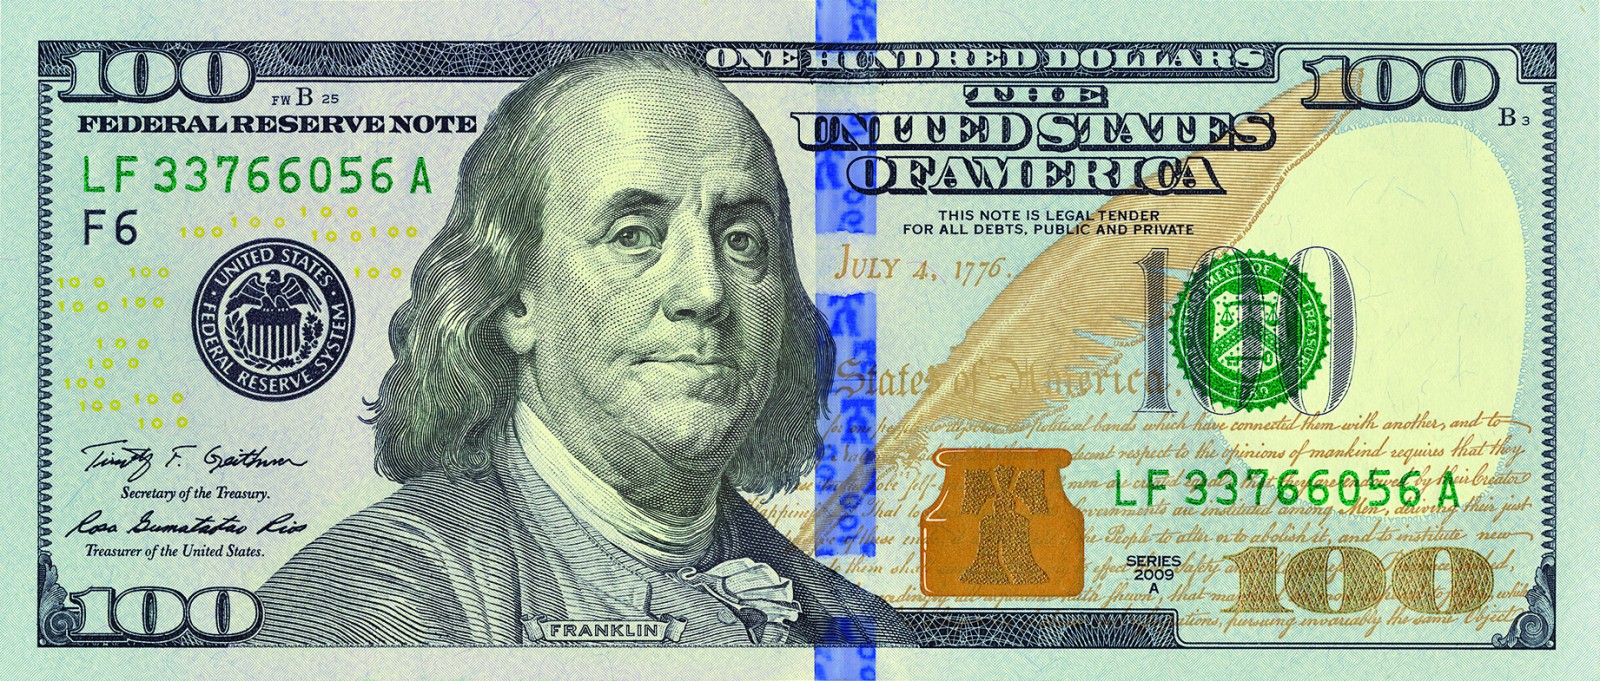 CША. Новая банкнота номиналом в 100 долларов серии 2009 А 